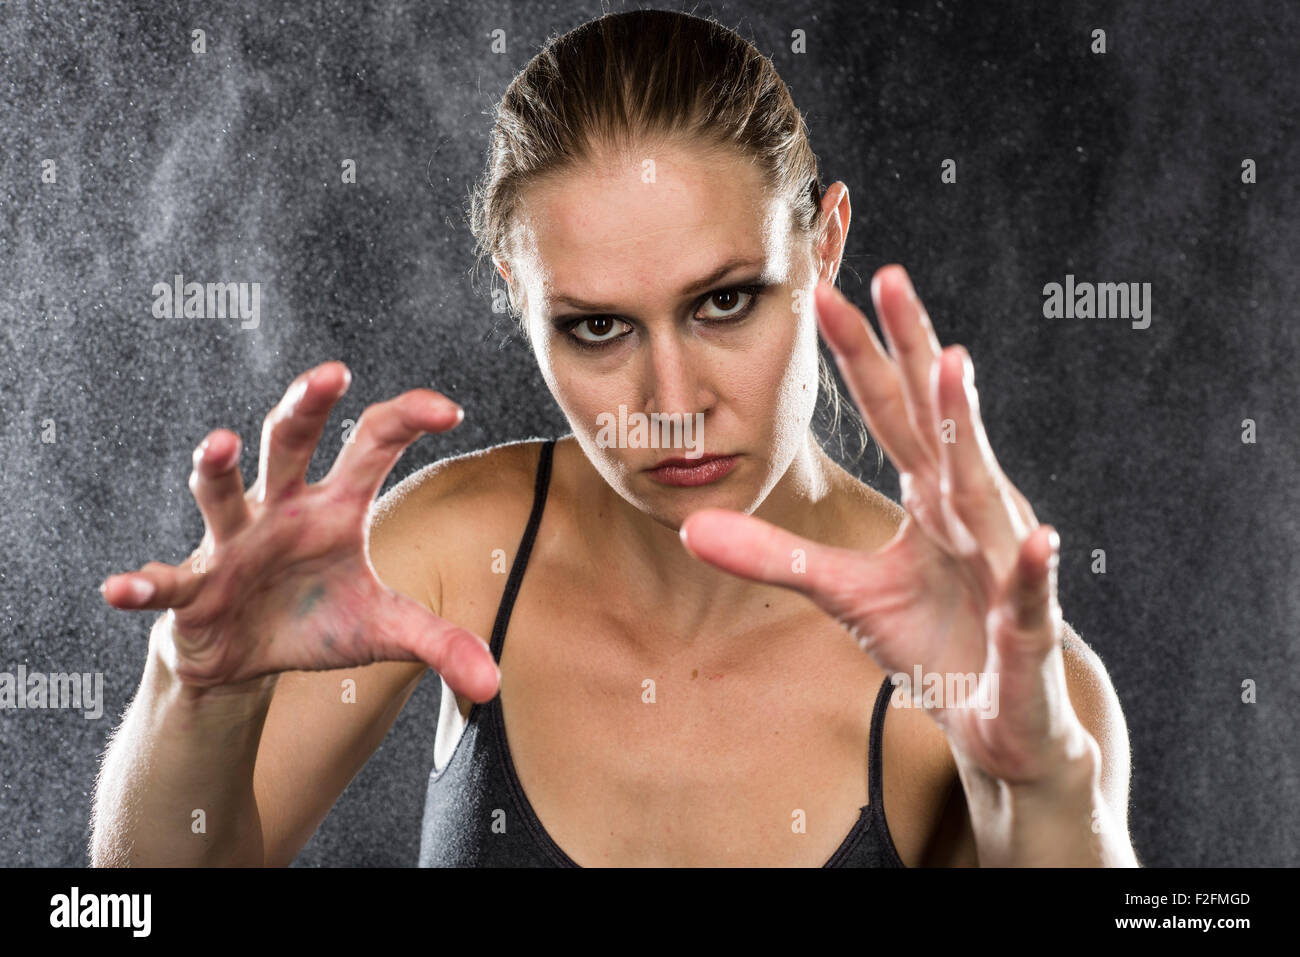 Sportliche Frau, die Hände in Richtung der Kamera zu erreichen Stockfoto